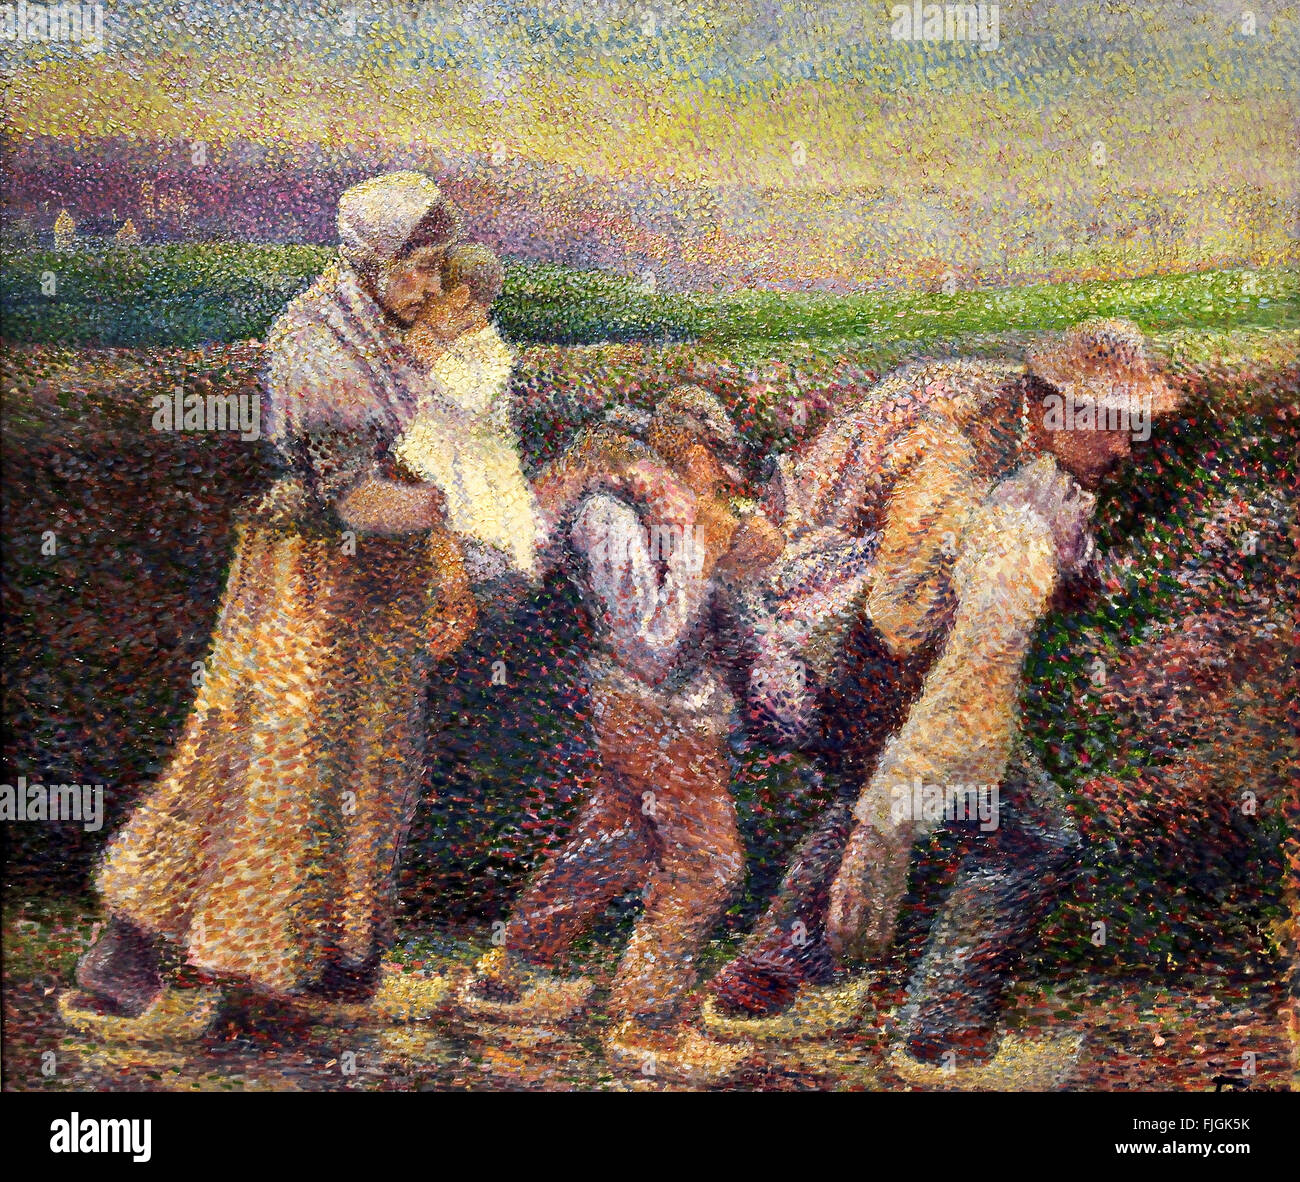 Im Morgengrauen Sie (Morgen - nach dem Streik) Jan Toorop (Johannes Theodorus) 1858-1928 niederländischen indonesischen Symbolik - Jugendstil - Pointillismus Maler Niederlande Stockfoto